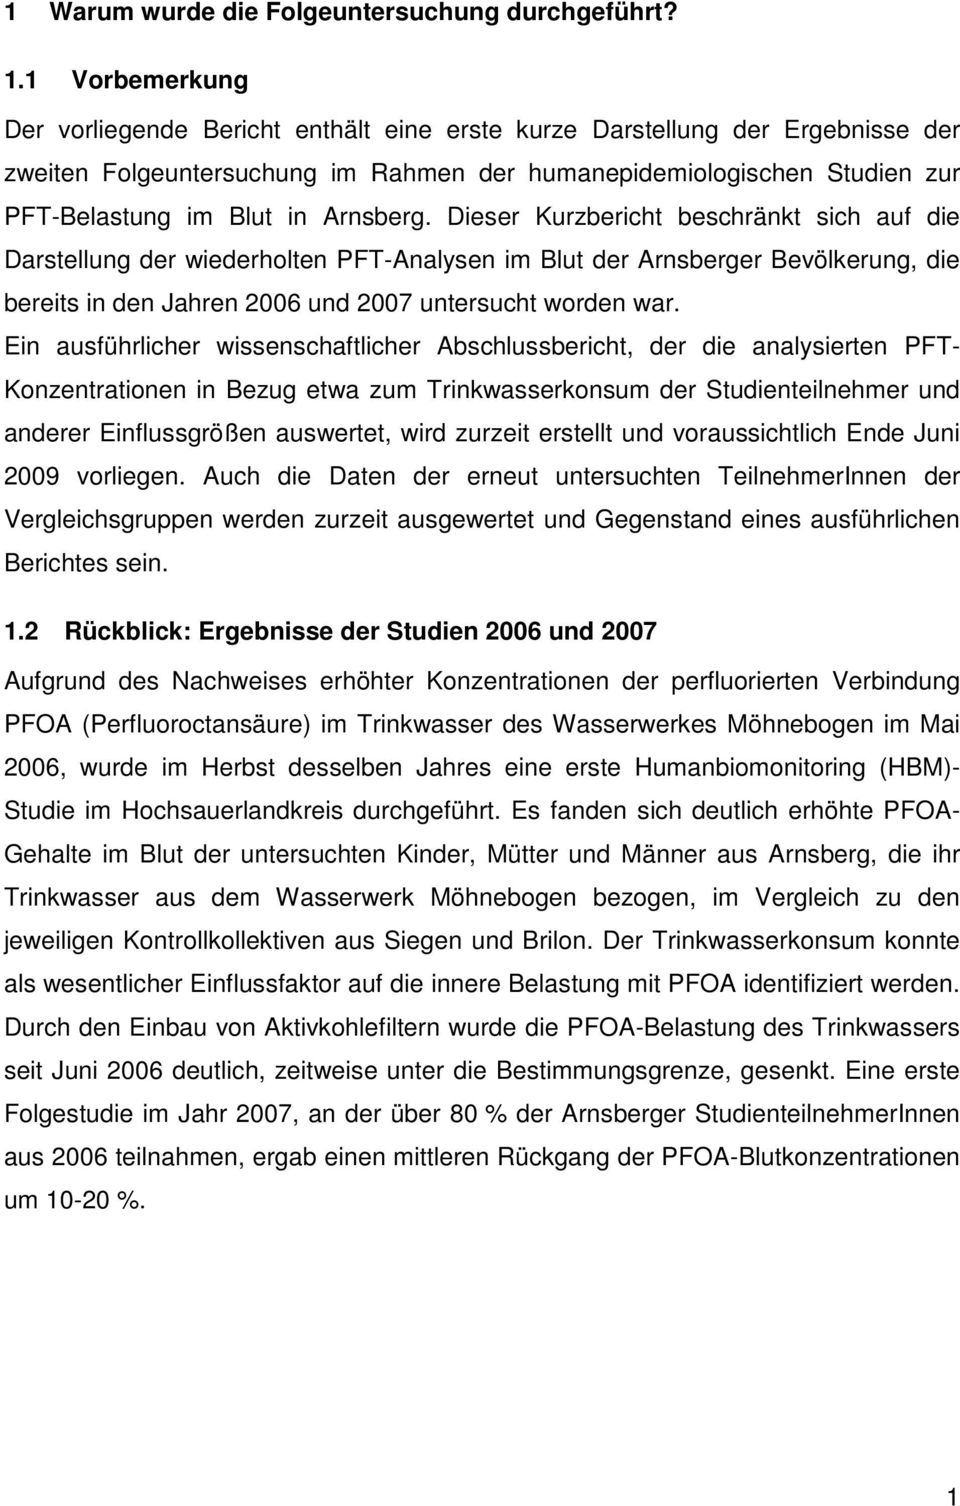 Arnsberg. Dieser Kurzbericht beschränkt sich auf die Darstellung der wiederholten PFT-Analysen im Blut der Arnsberger Bevölkerung, die bereits in den Jahren 2006 und 2007 untersucht worden war.